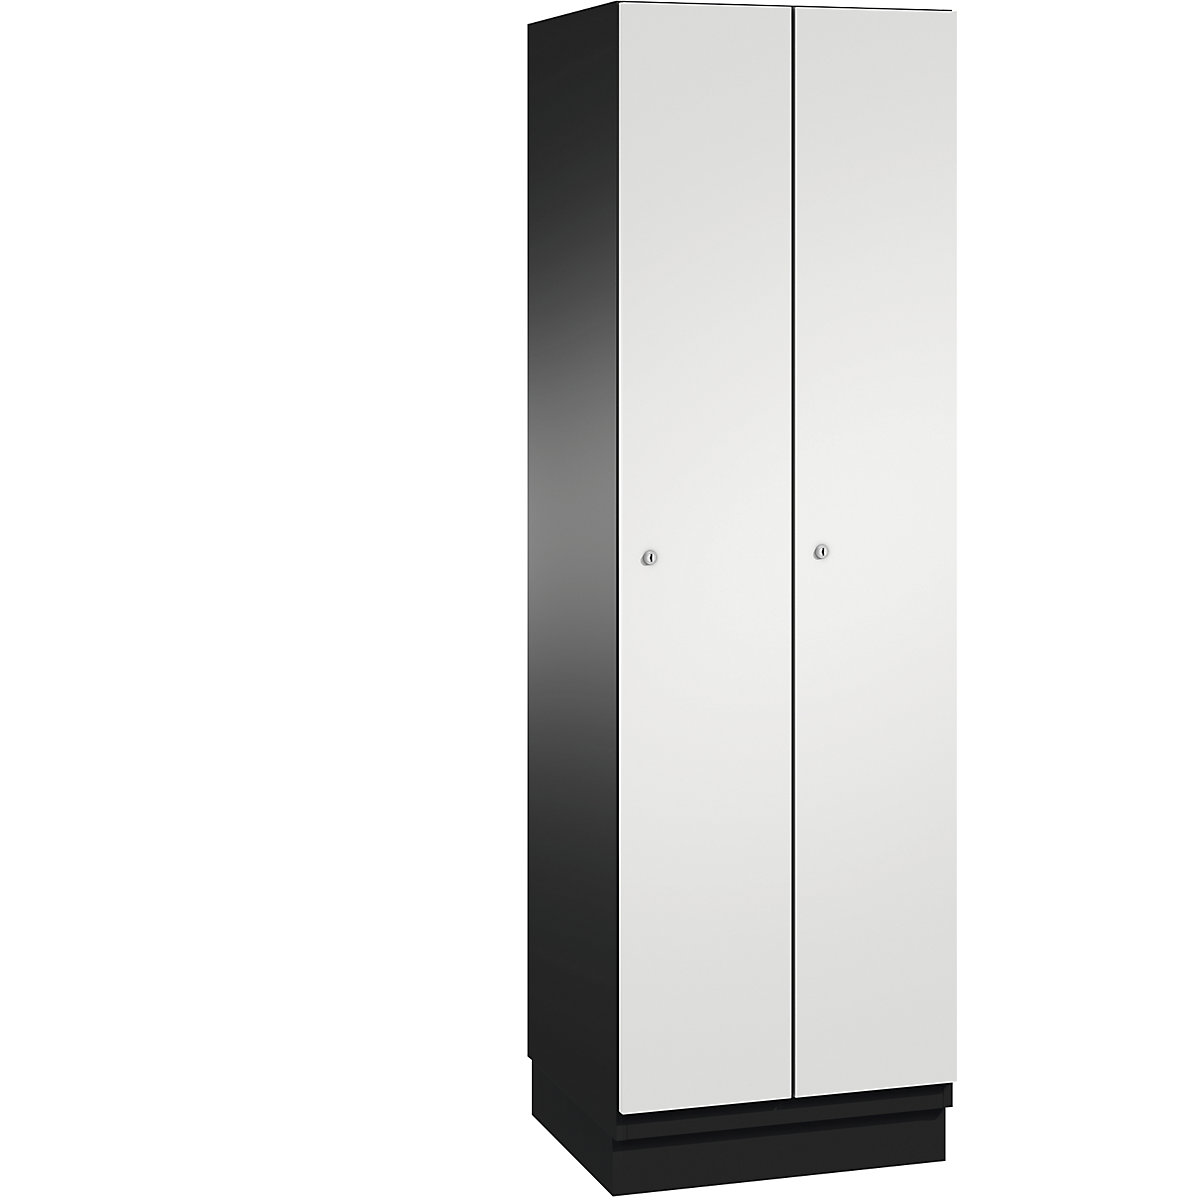 CAMBIO cloakroom locker with sheet steel doors – C+P, 2 compartments, 600 mm wide, body black grey / door light grey-7